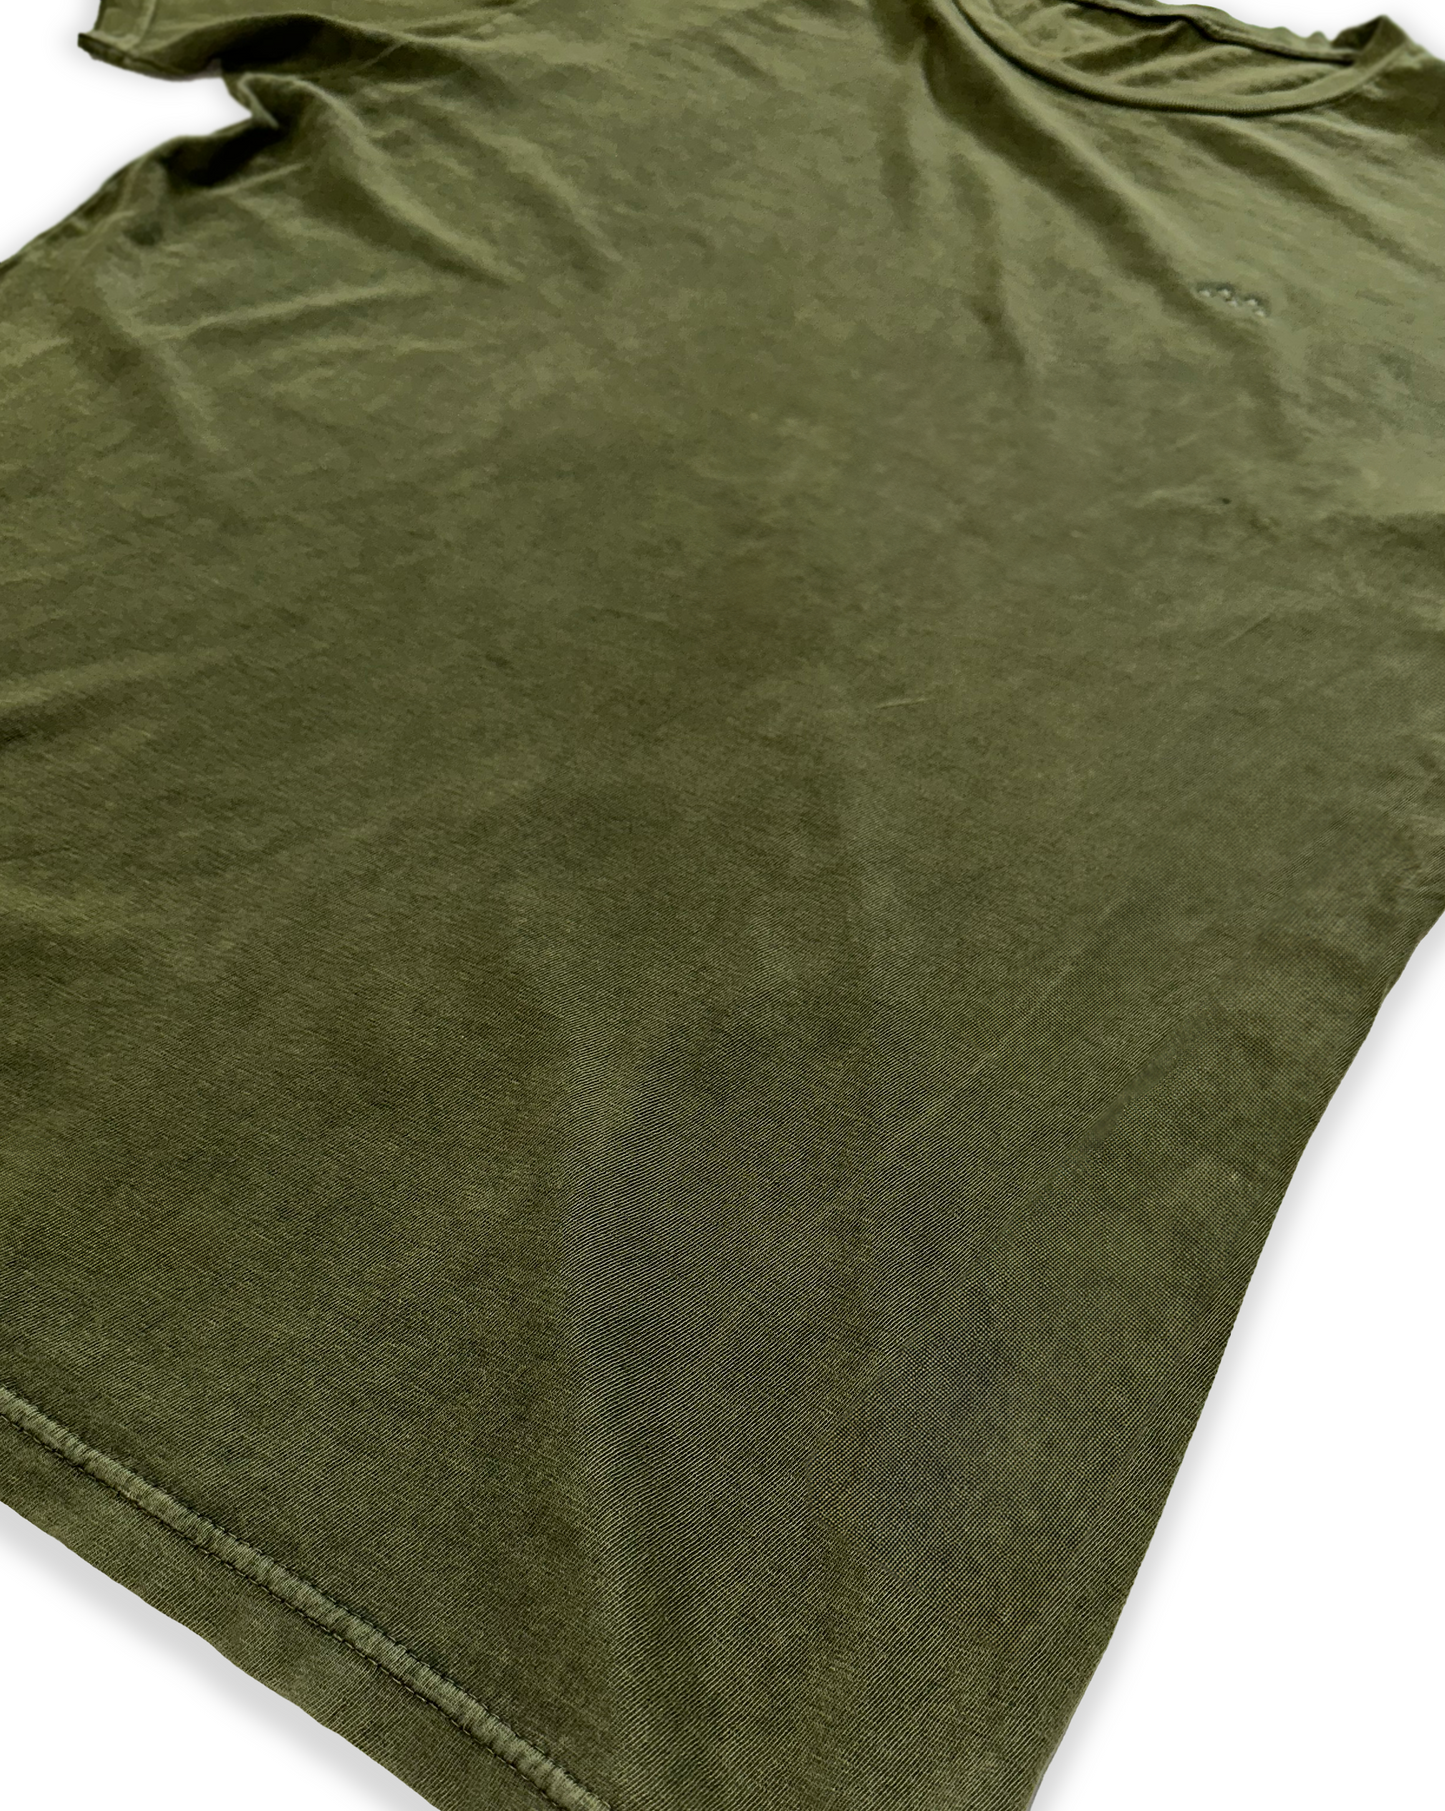 Embroidered Mineral Wash Vintage Crewneck T-Shirt “Olive Green”